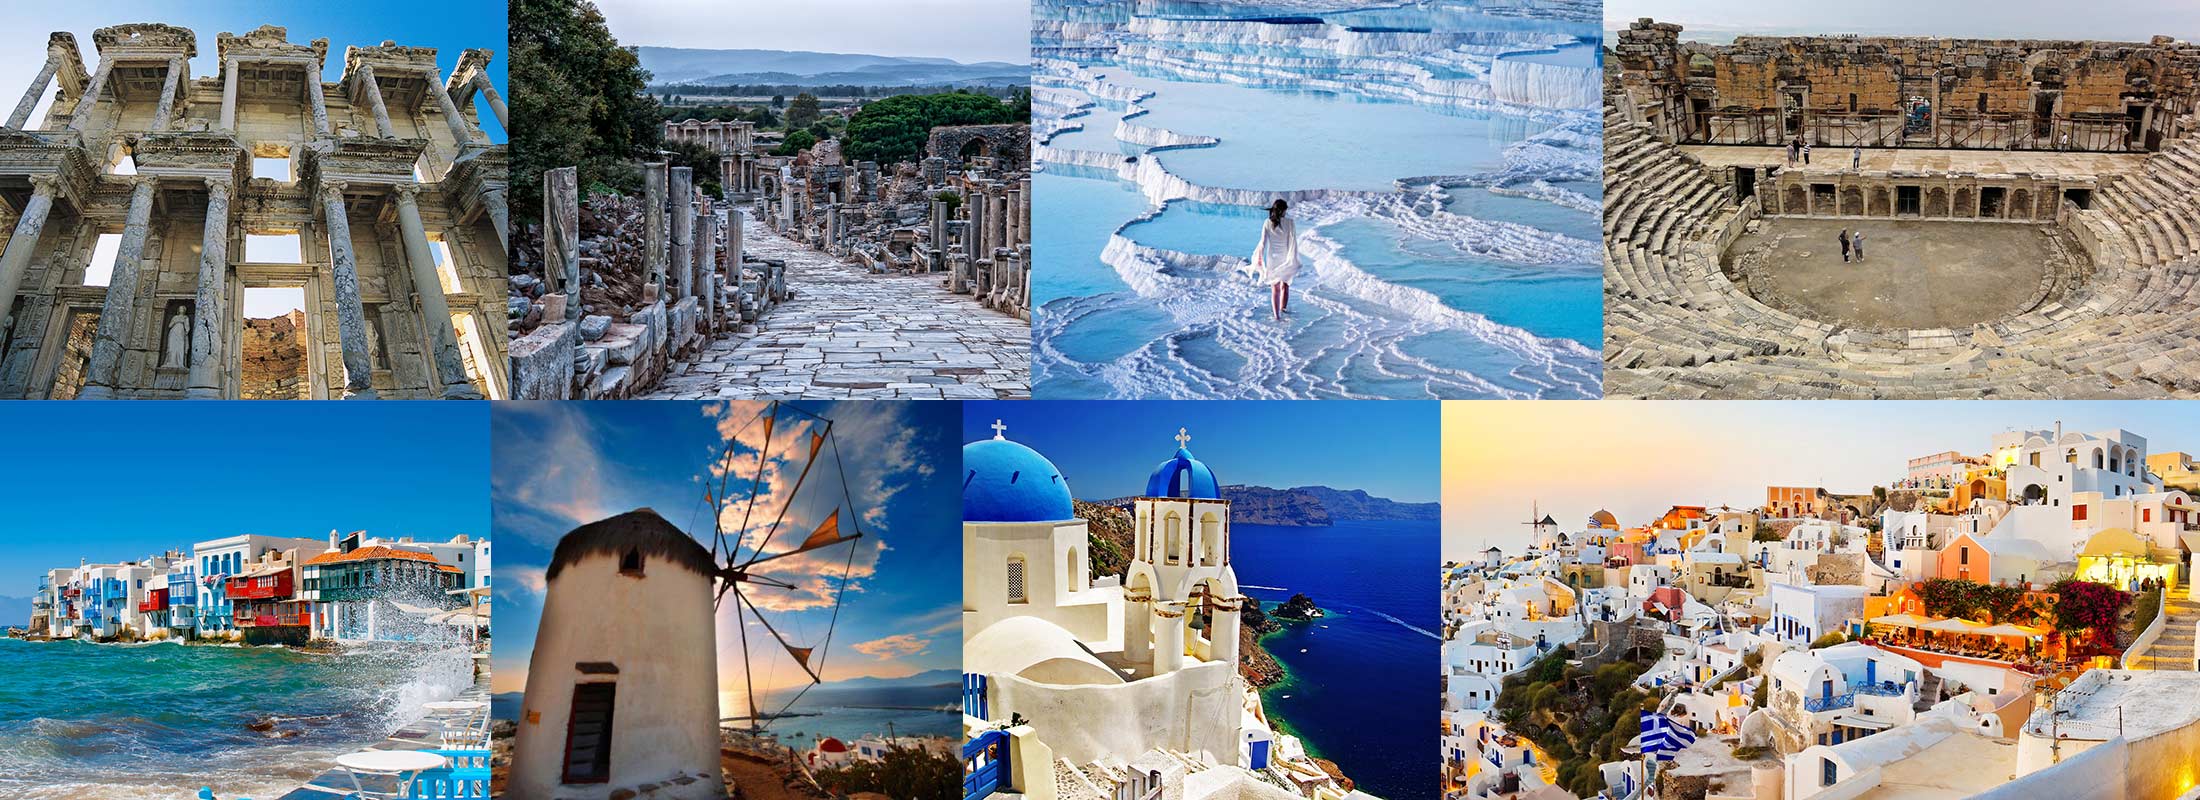 6-days-greece-turkey-package-tours-santorini-mykonos-ephesus-pamukkale